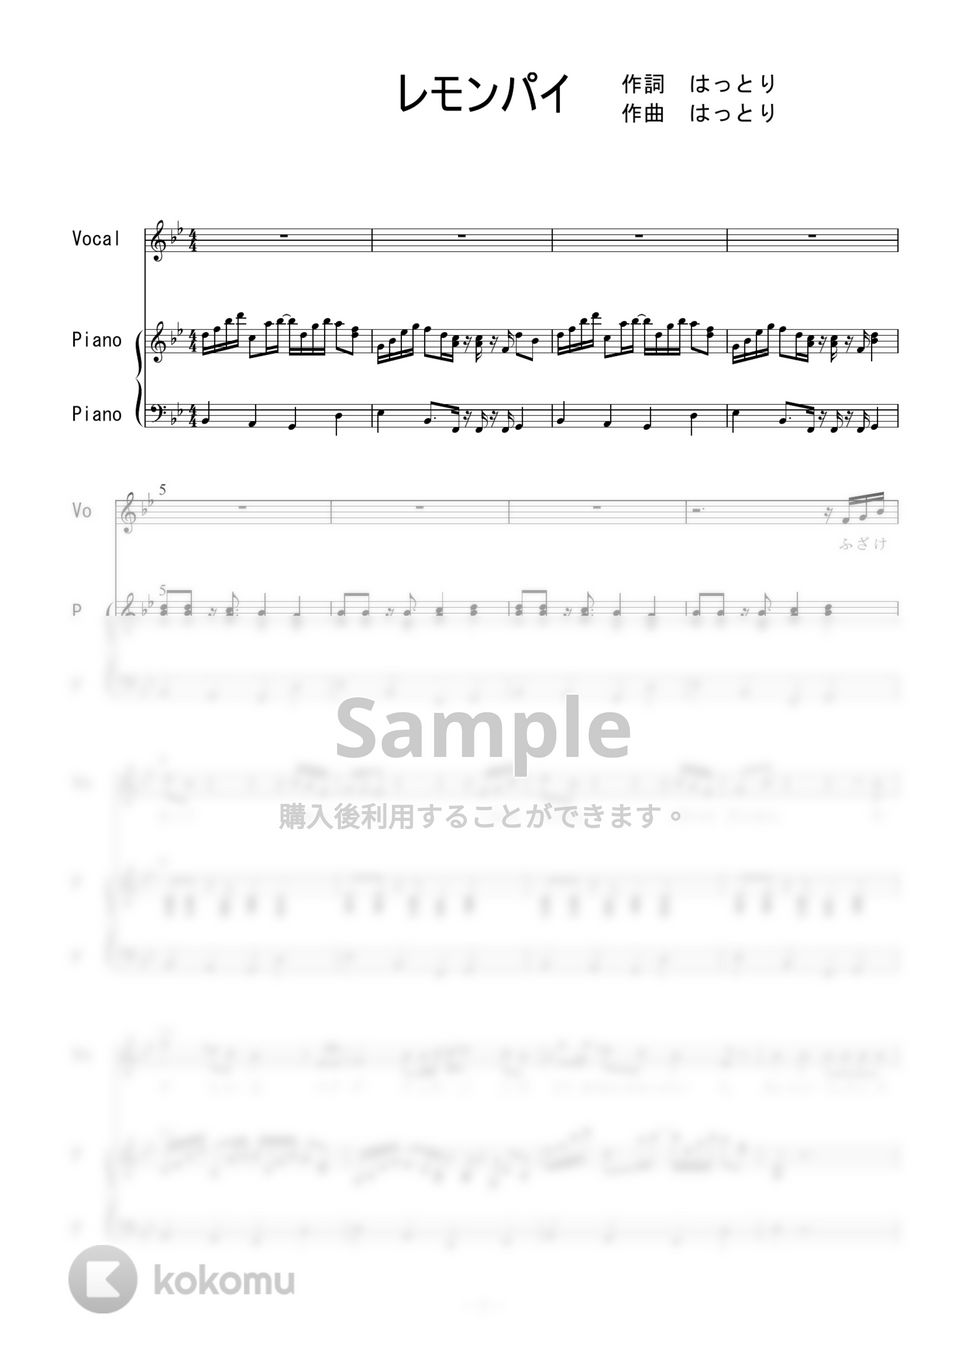 マカロニえんぴつ - レモンパイ (ピアノ弾き語り) by 二次元楽譜製作所